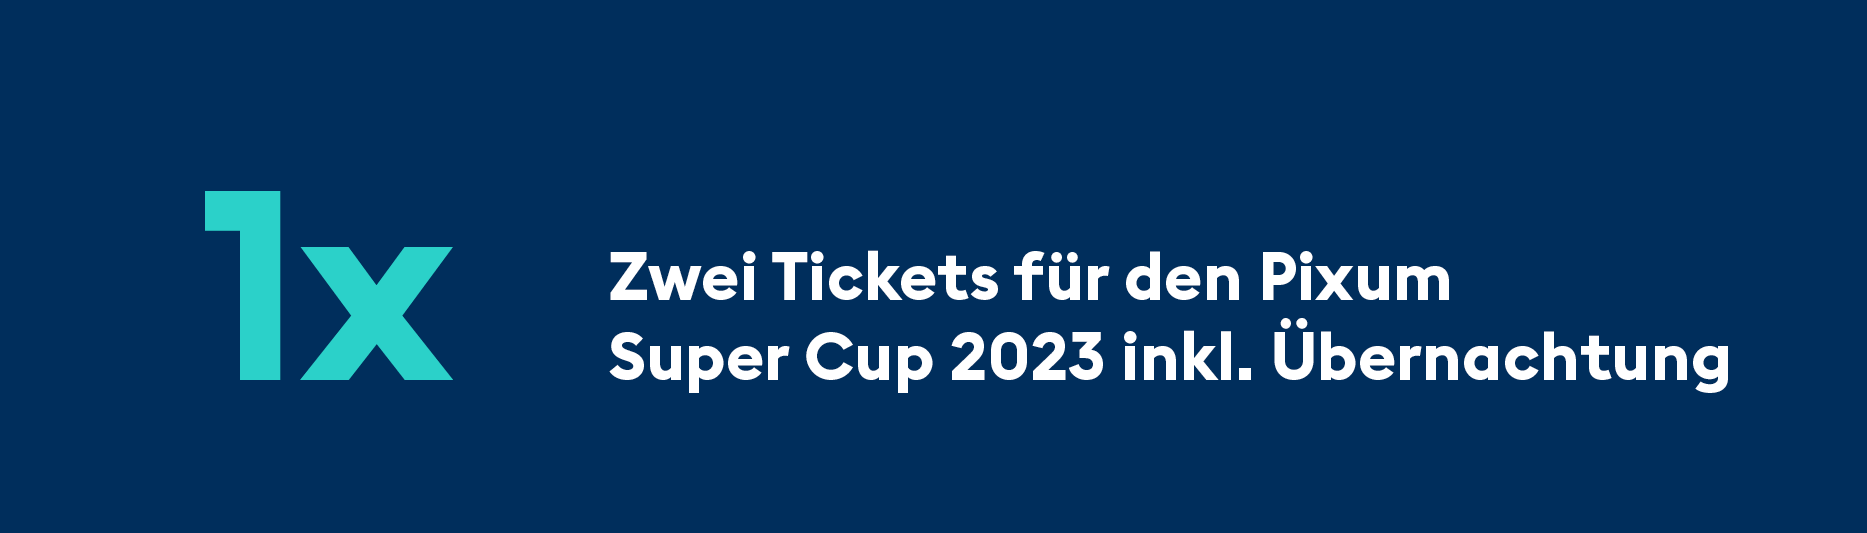 HBL Pixum Super Cup 2023 DKB